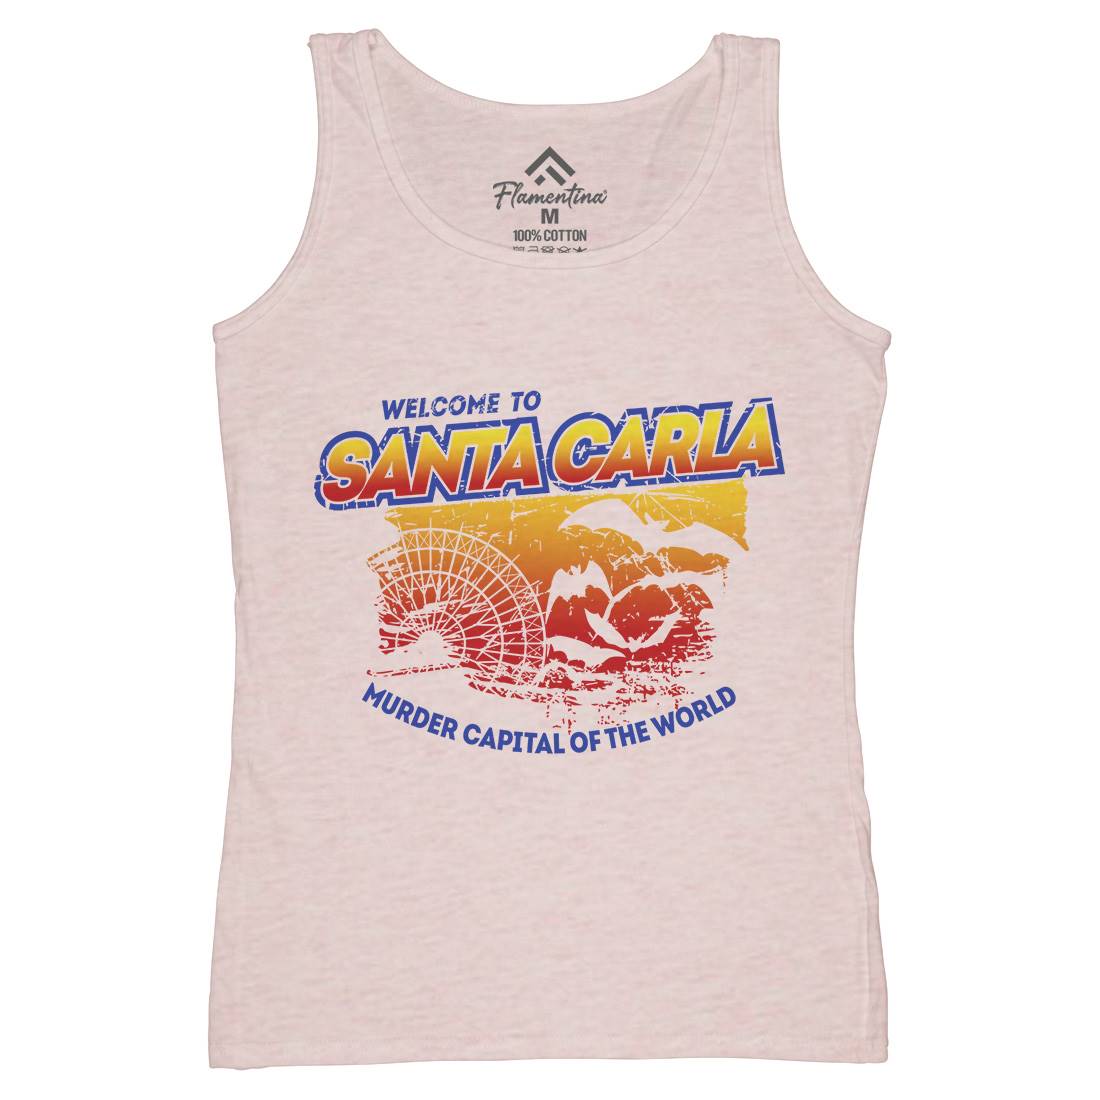 Santa Carla Womens Organic Tank Top Vest Horror D369